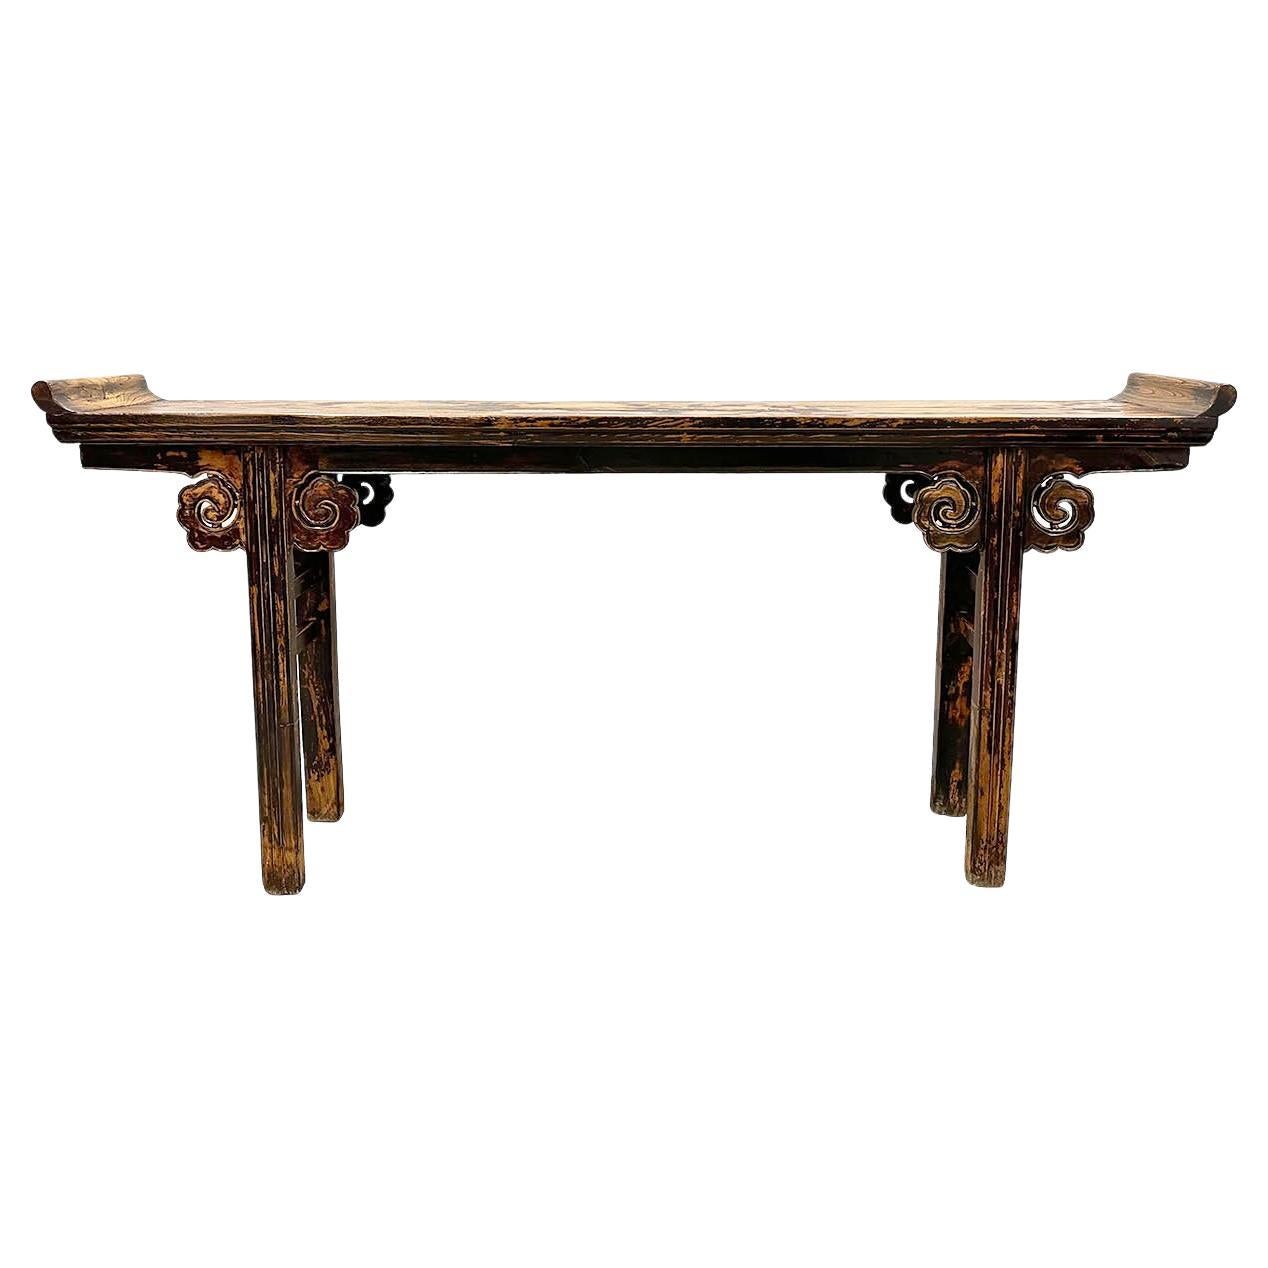 Table d'autel chinoise ancienne du 19ème siècle sculptée et ouverte, table/table console Sofa